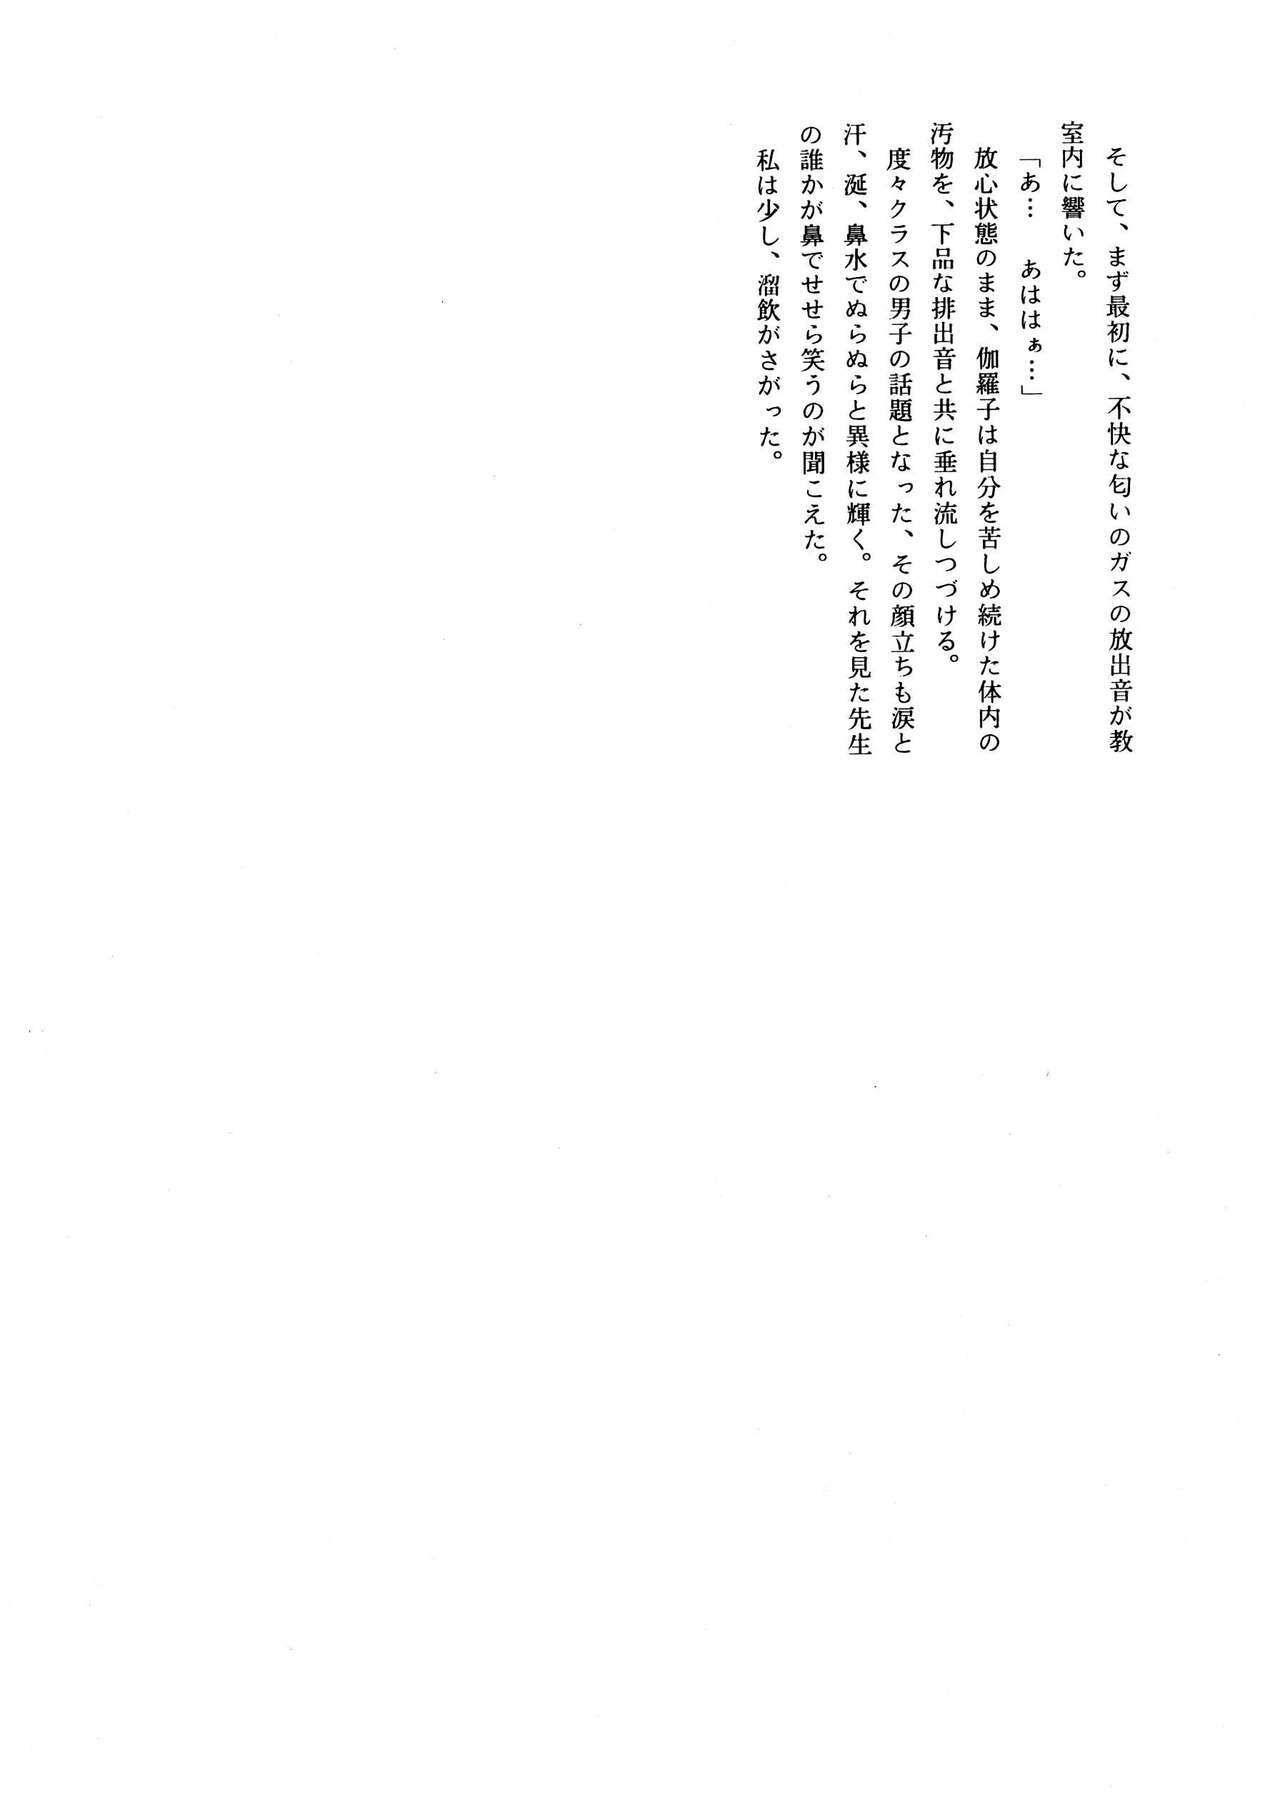 [菊花酒楼 (菊水)] Celestial page 37 full